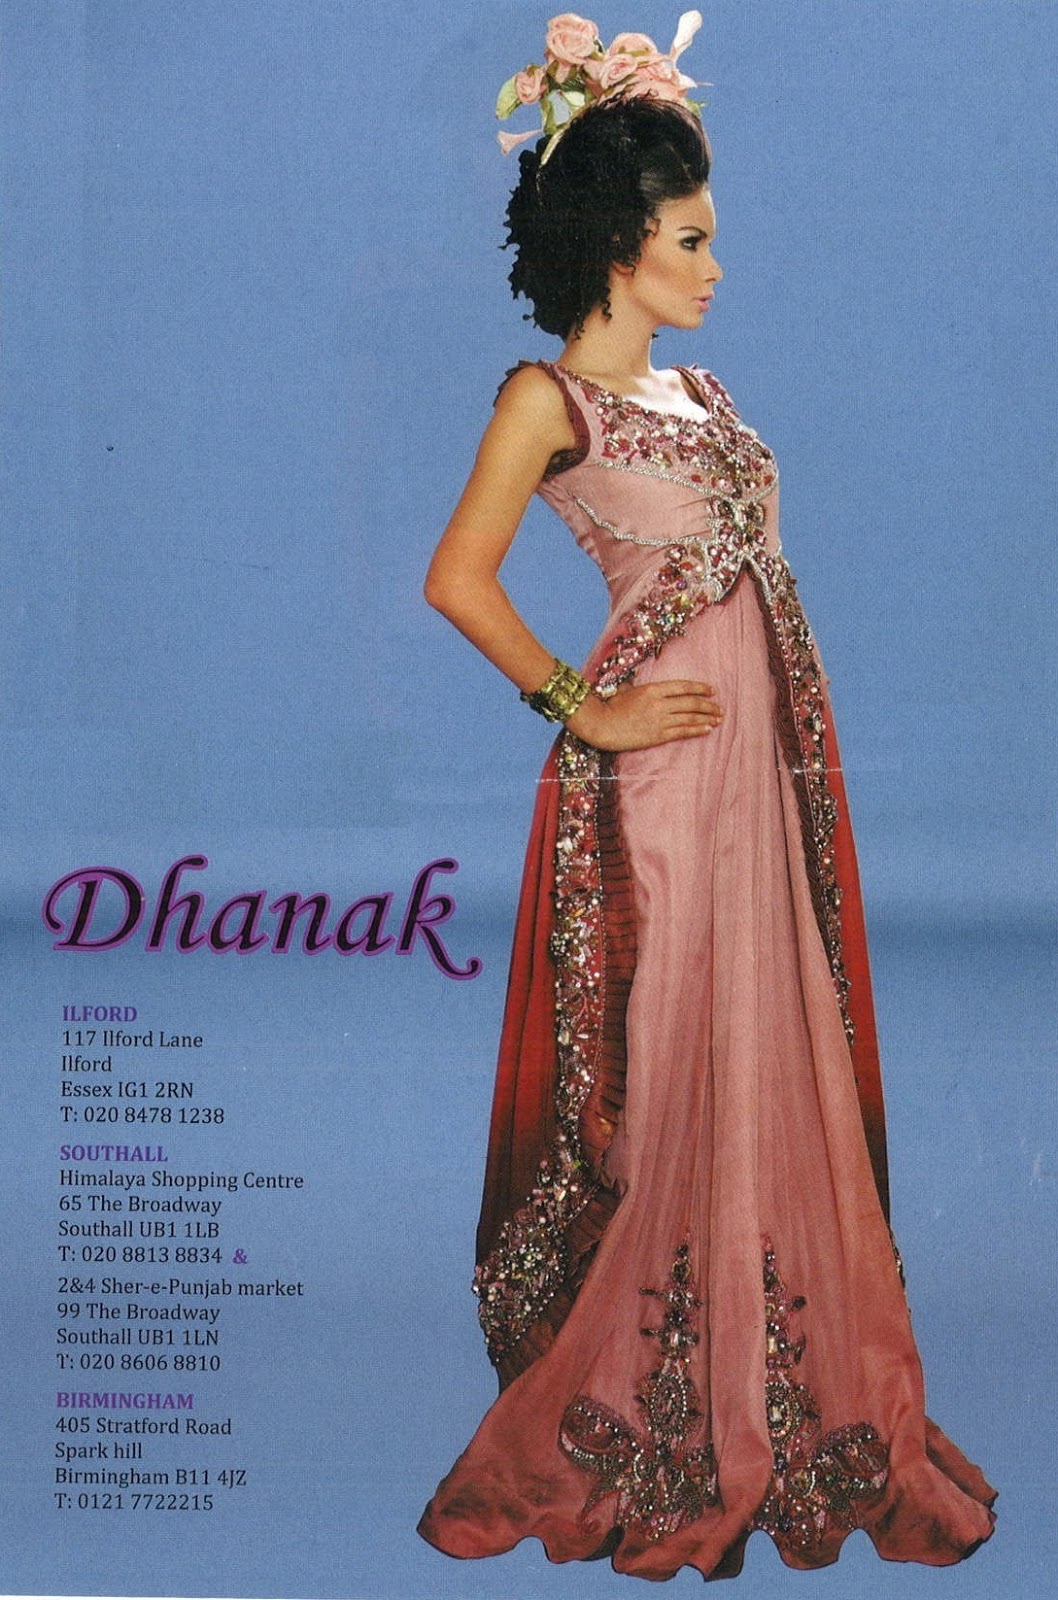 dhanak fashions